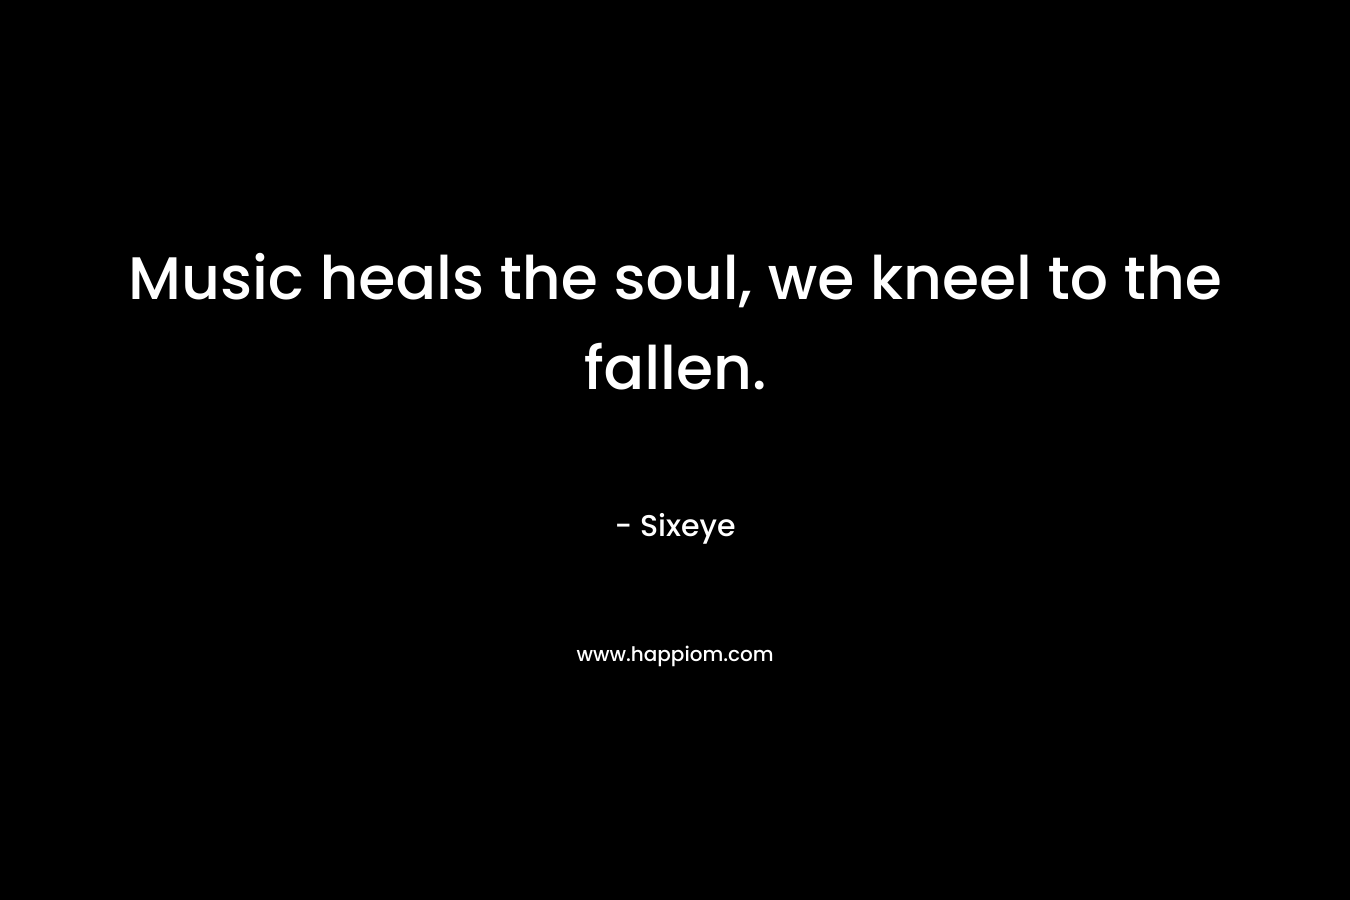 Music heals the soul, we kneel to the fallen.